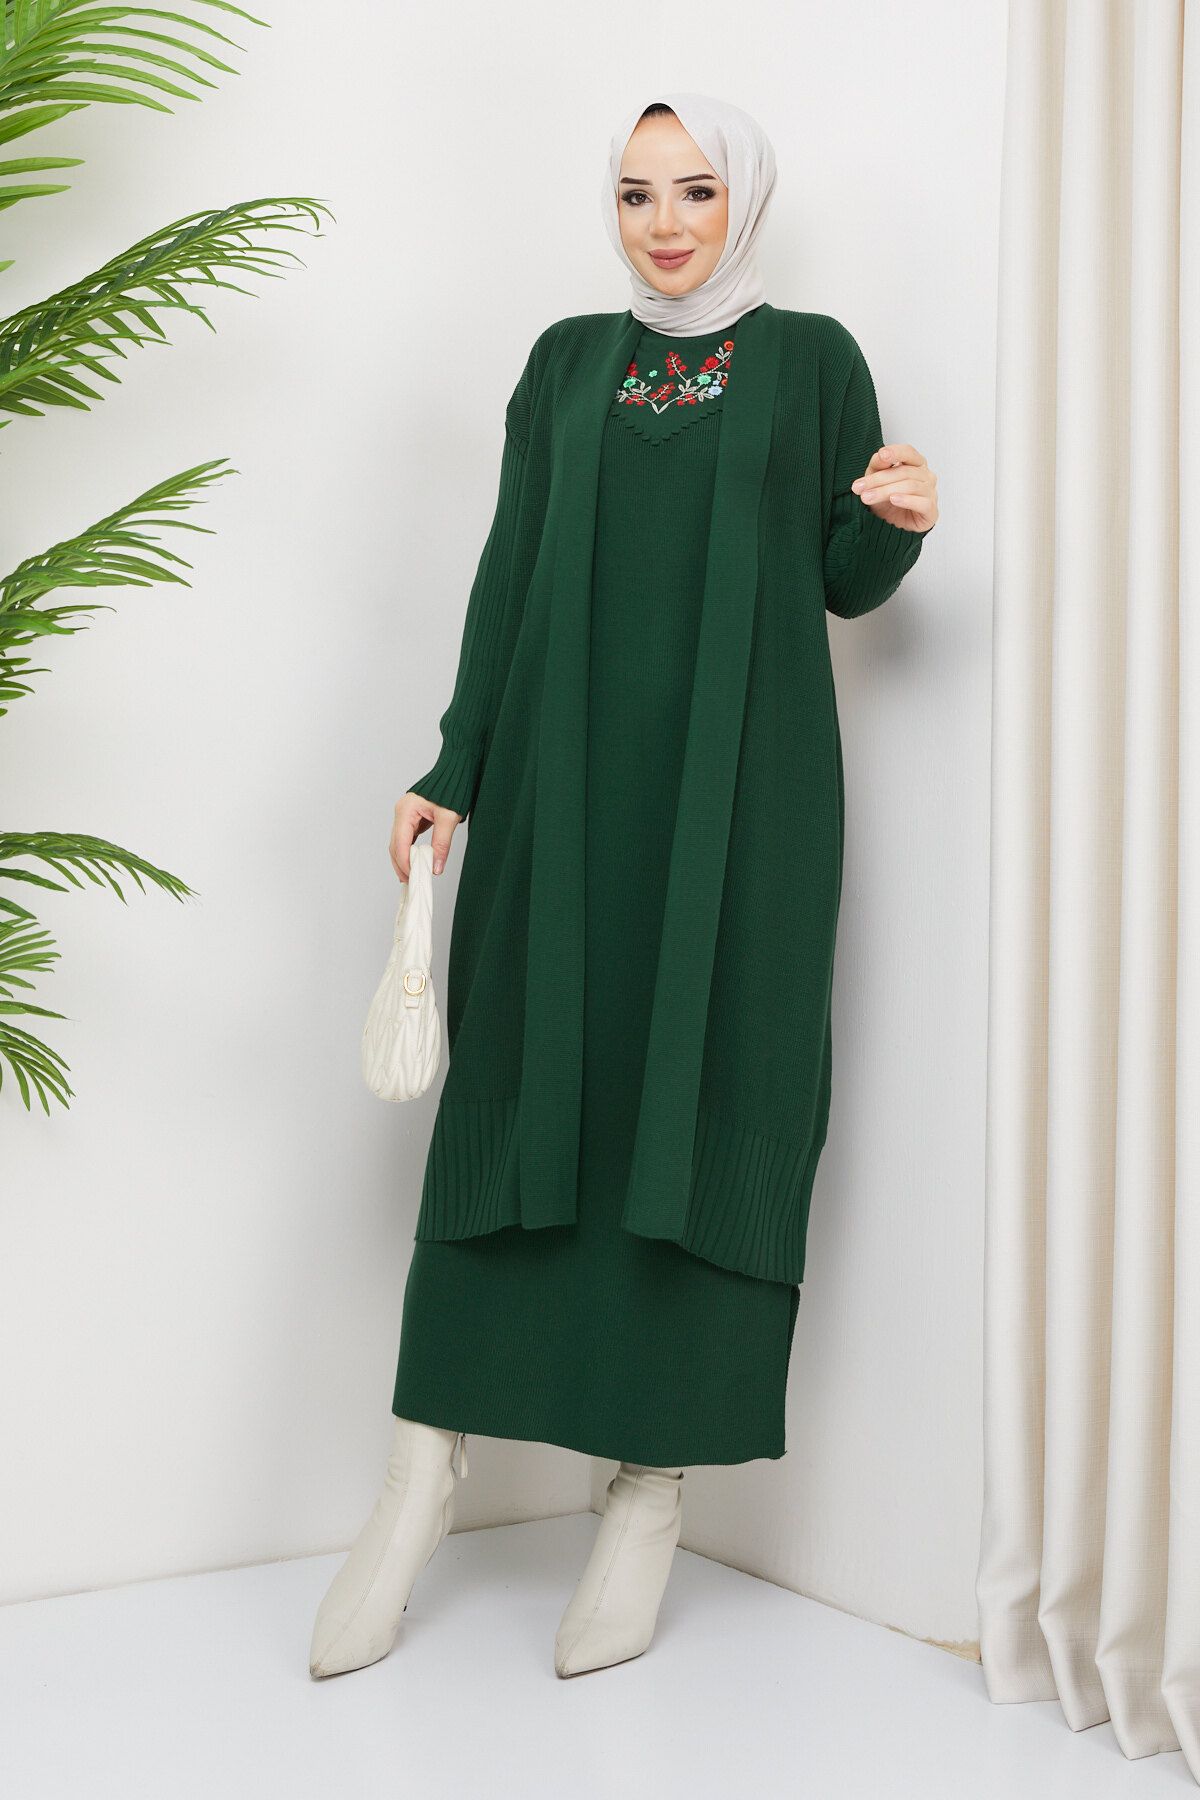 Julude Koyuyeşil Kadın Nakışlı Triko Elbise Hırka İkili Takım